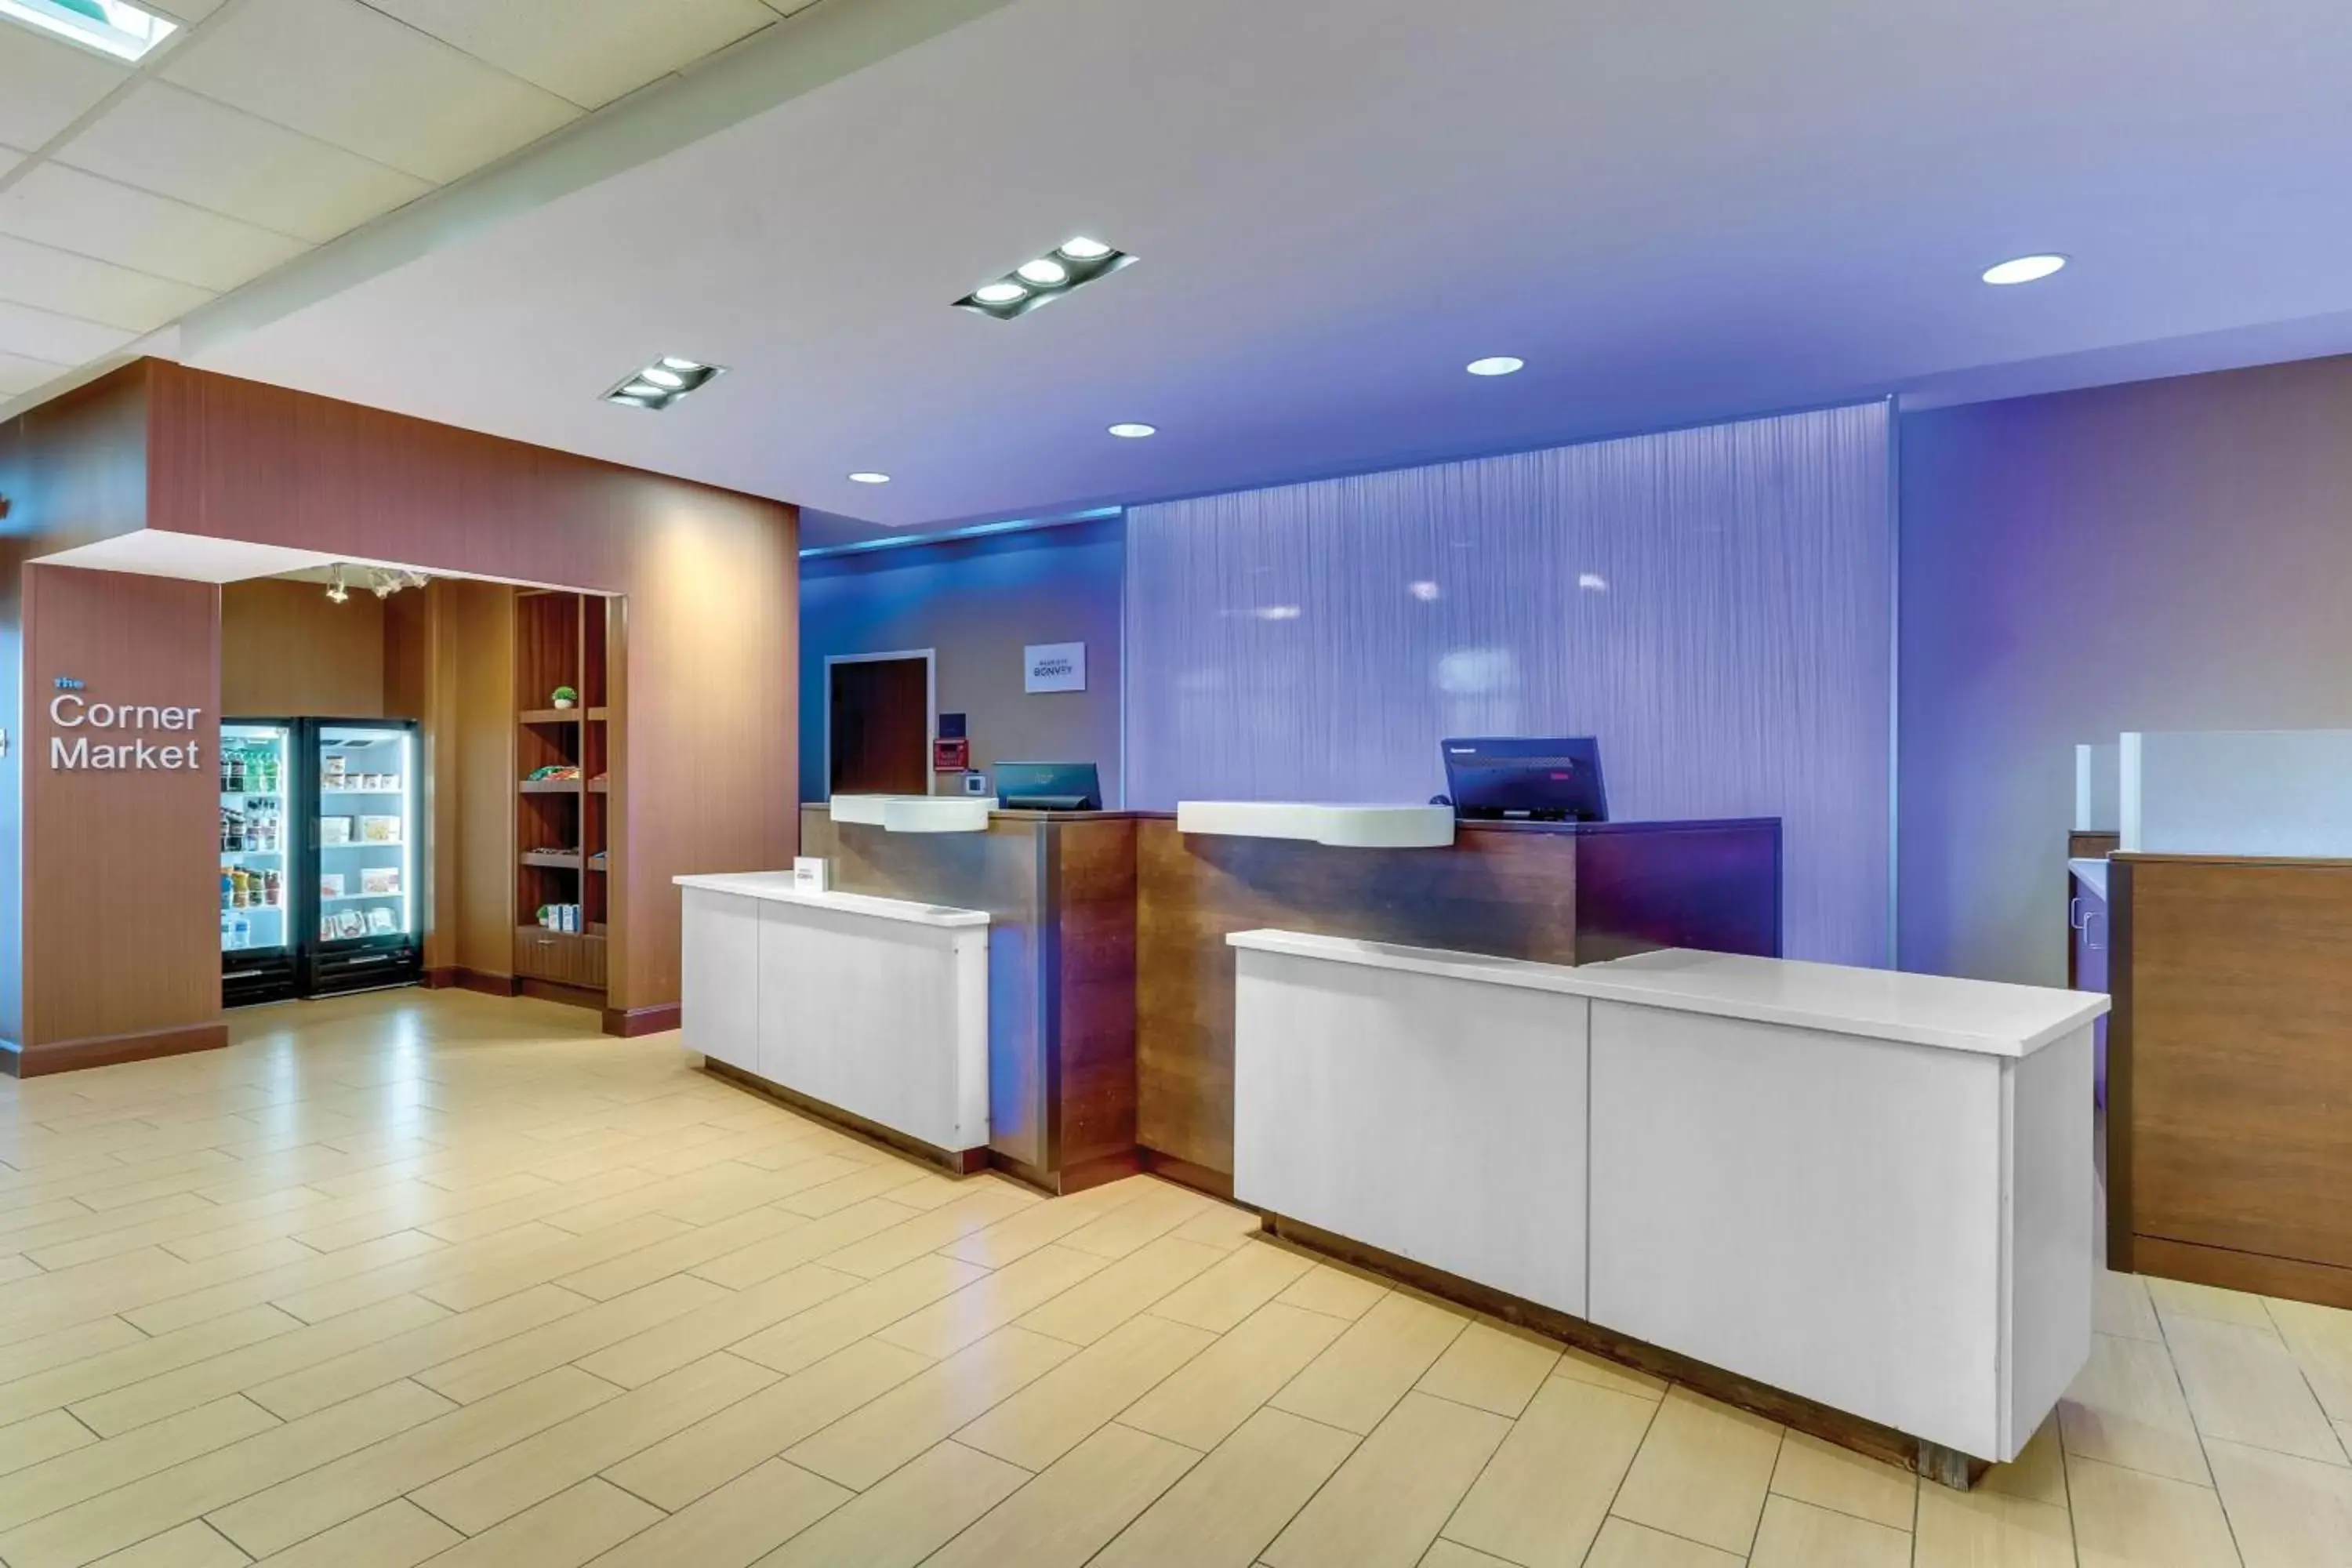 Lobby or reception, Lobby/Reception in Fairfield Inn & Suites by Marriott Dunn I-95